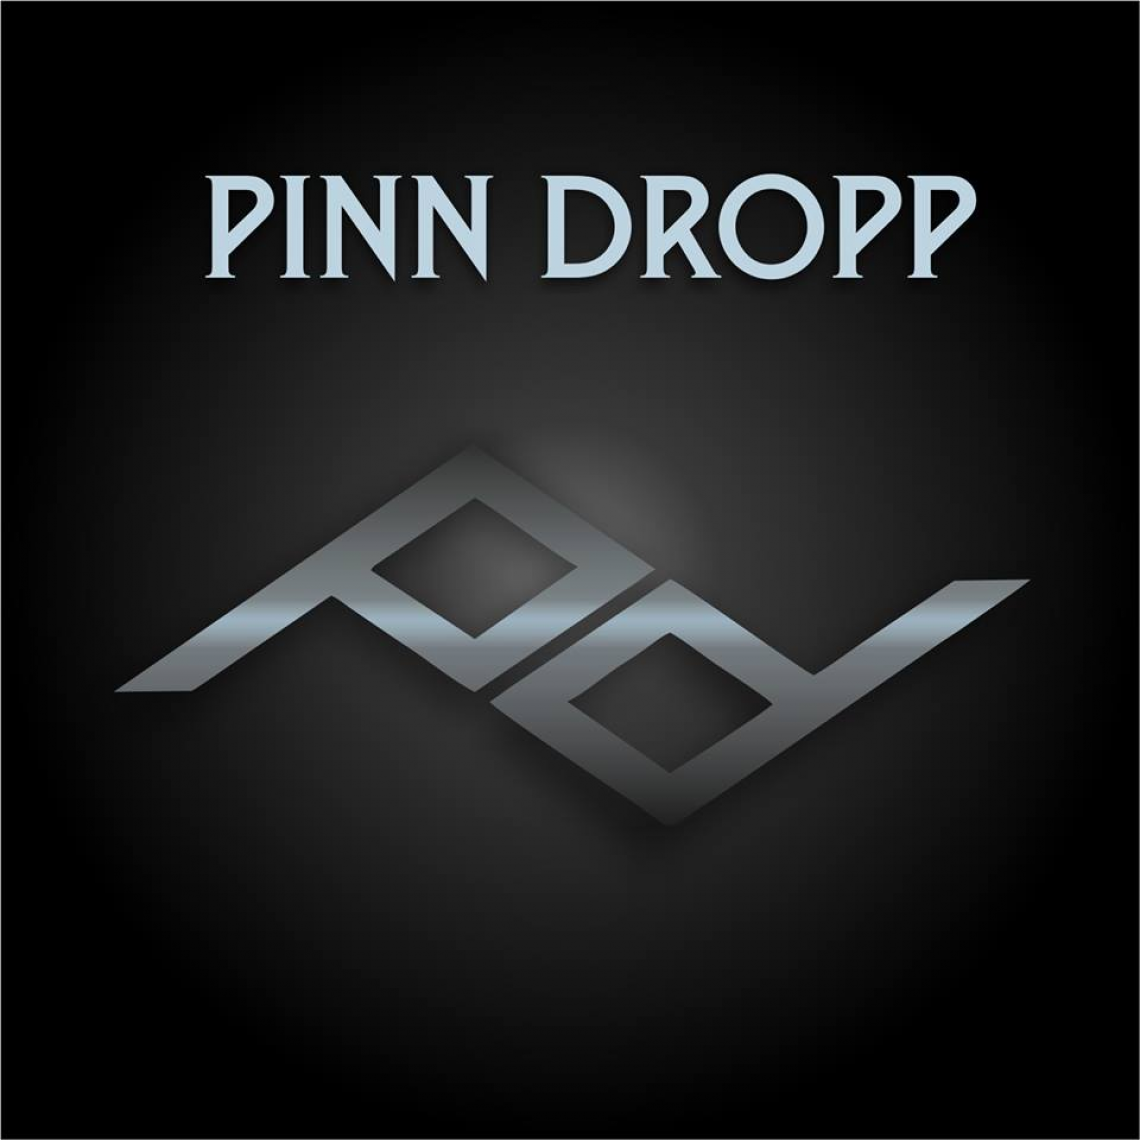 Pinn Dropp